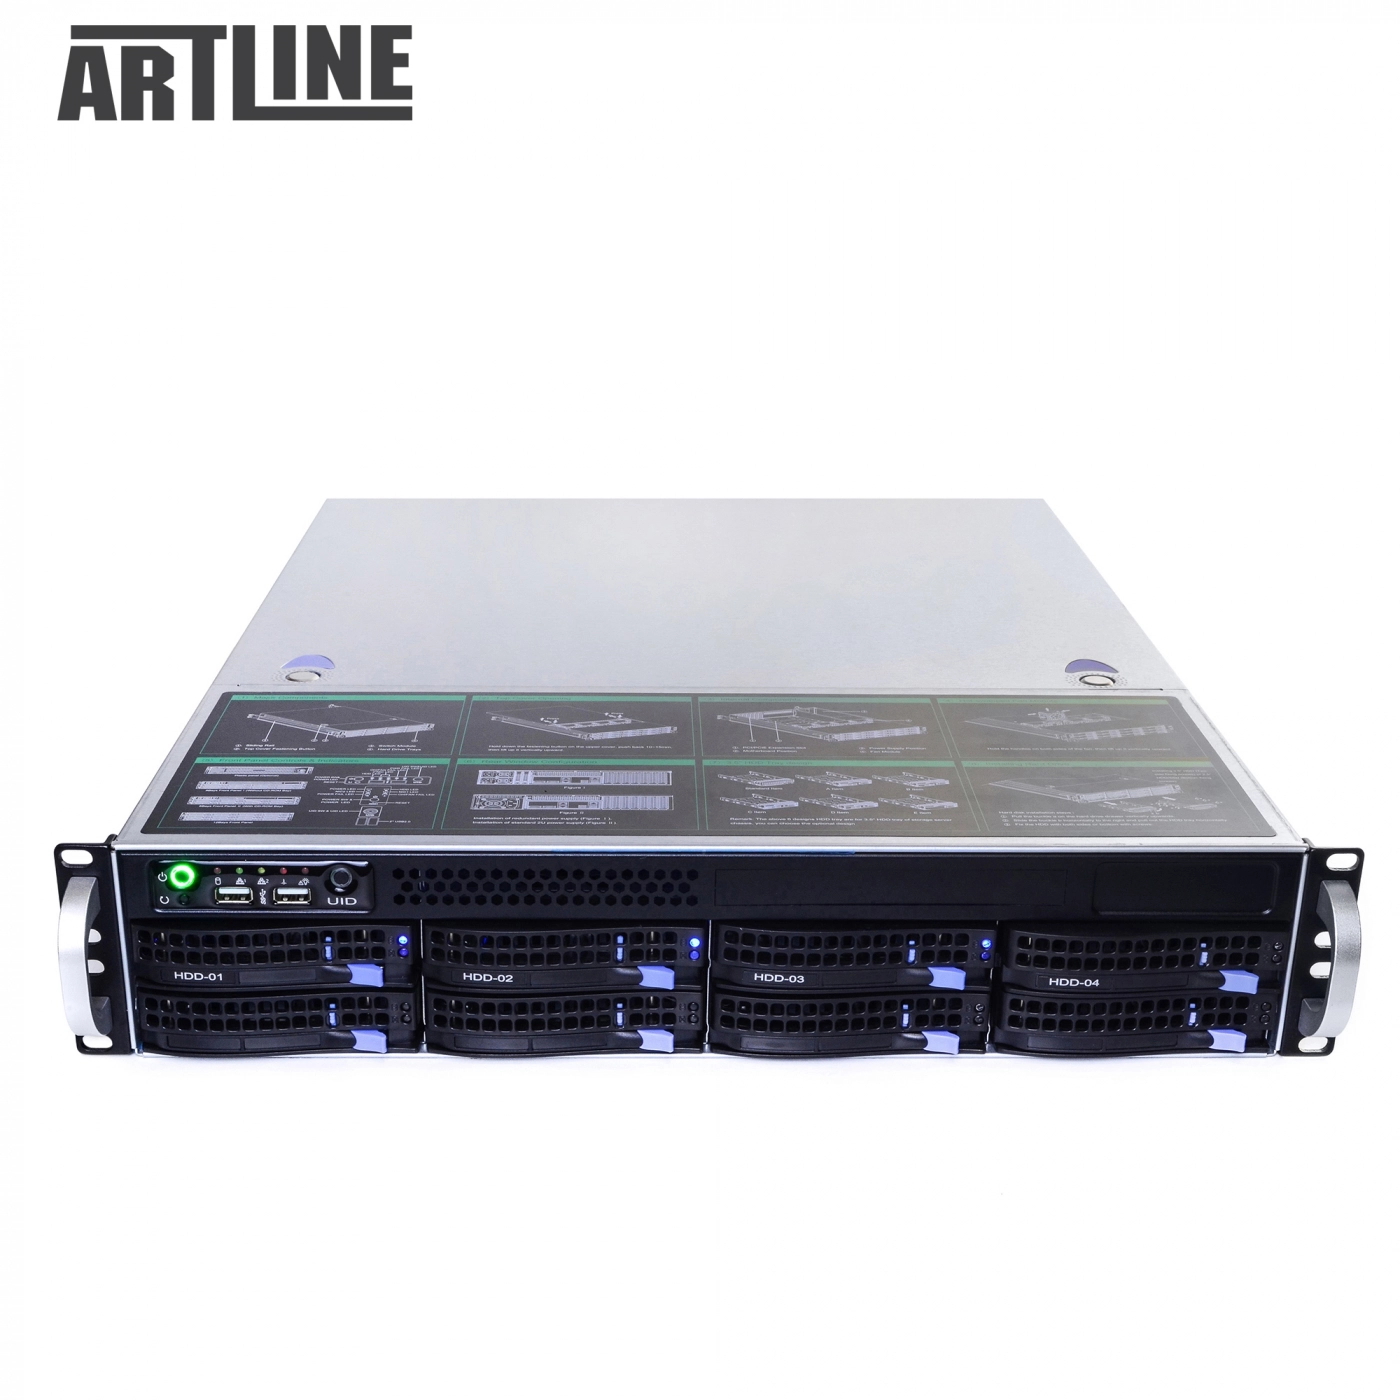 Купить Сервер ARTLINE Business R34v03 - фото 10